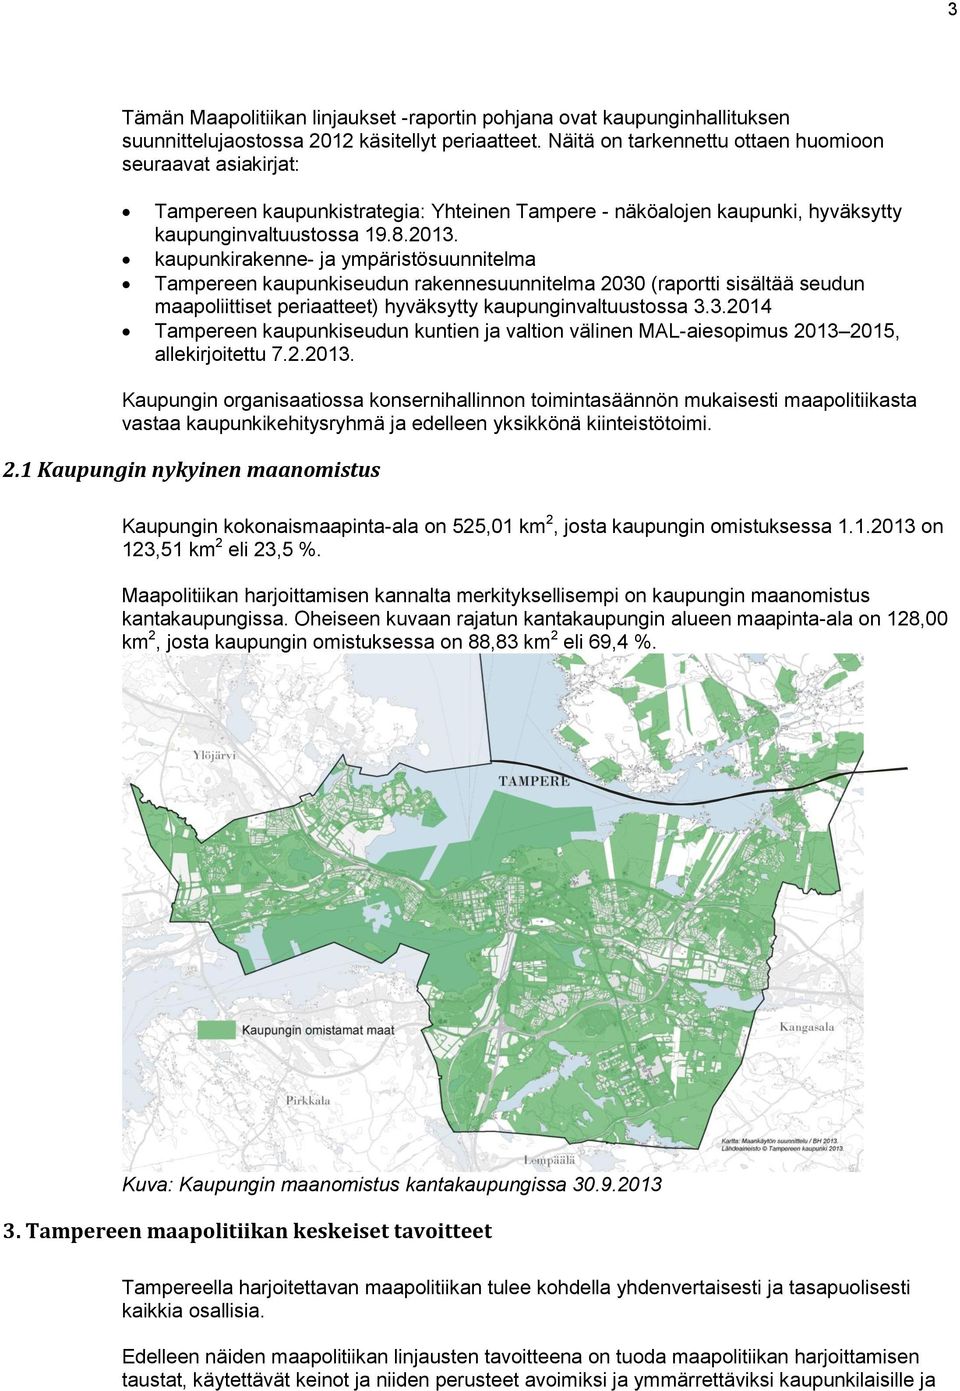 kaupunkirakenne- ja ympäristösuunnitelma Tampereen kaupunkiseudun rakennesuunnitelma 2030 (raportti sisältää seudun maapoliittiset periaatteet) hyväksytty kaupunginvaltuustossa 3.3.2014 Tampereen kaupunkiseudun kuntien ja valtion välinen MAL-aiesopimus 2013 2015, allekirjoitettu 7.